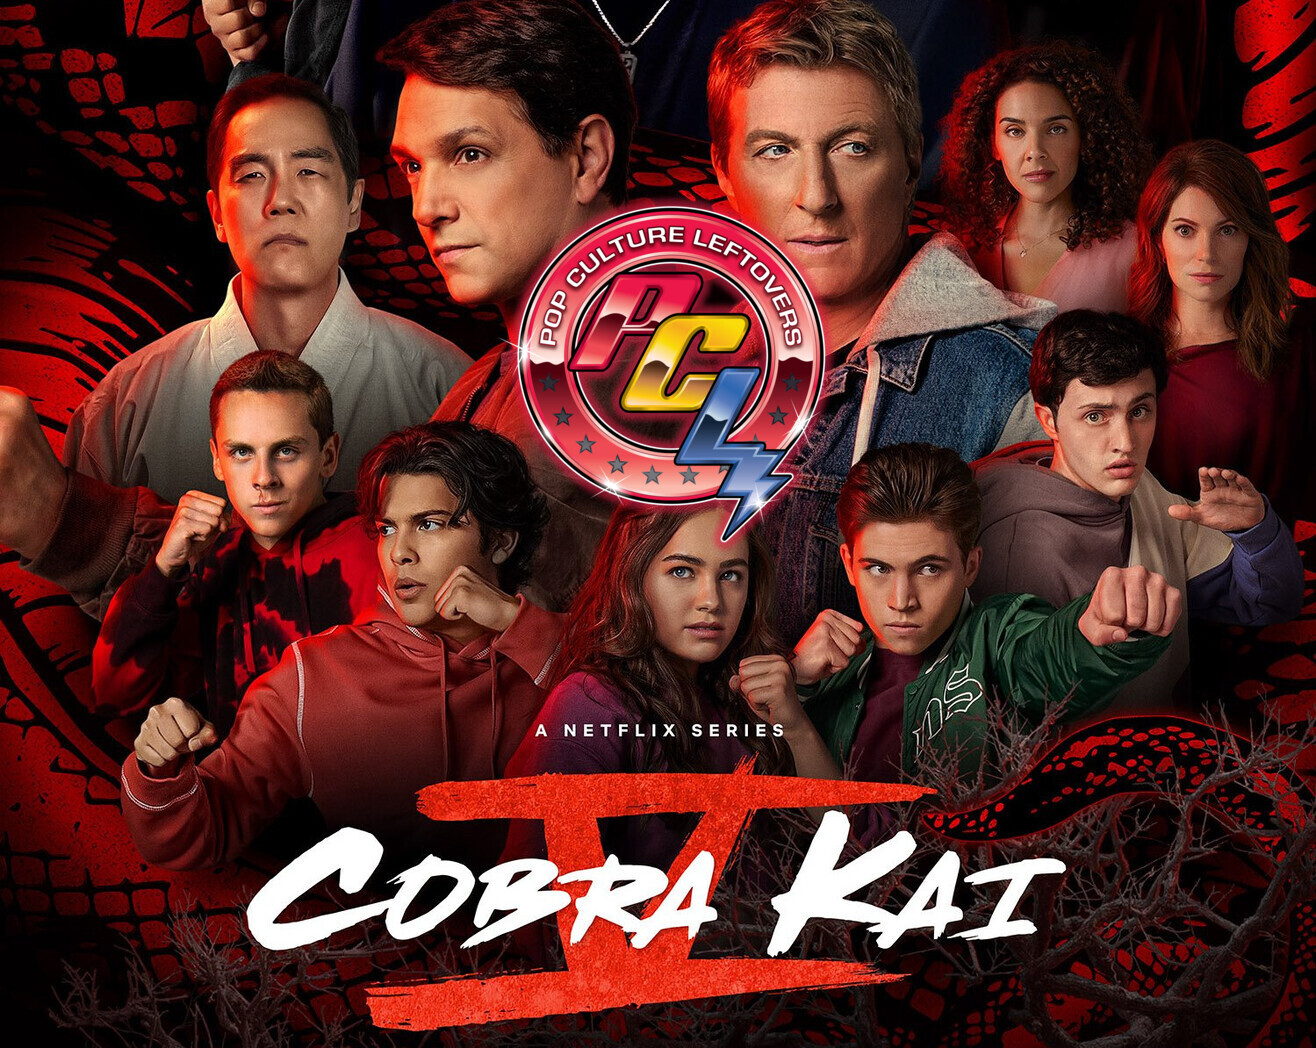 Cobra Kai star teases show future beyond season 5